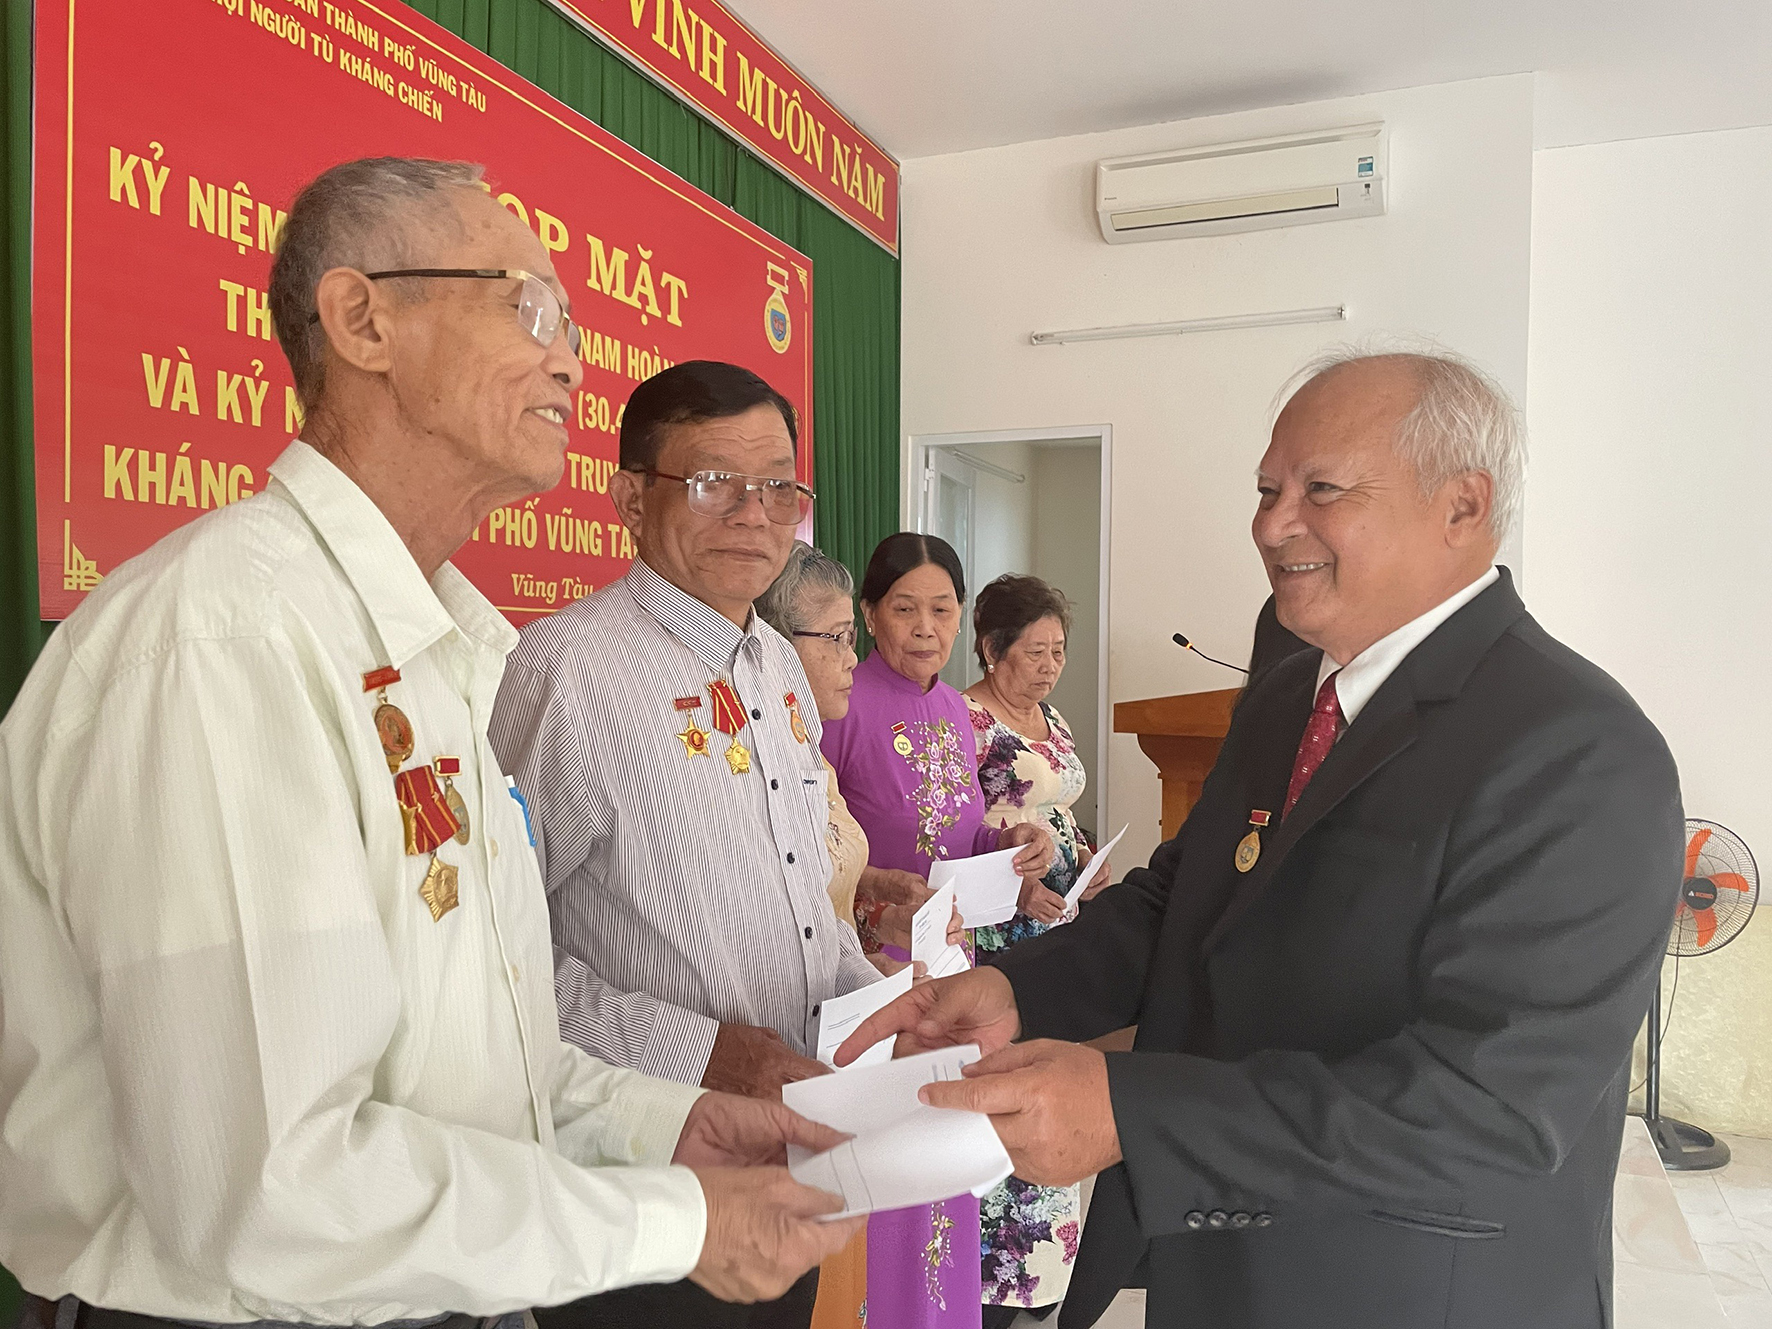 Ông Lê Duy Tâm, Chủ tịch Hội Người tù kháng chiến TP.Vũng Tàu tặng quà cho hội viên cựu tù có nhiều đóng góp trong công tác hội.